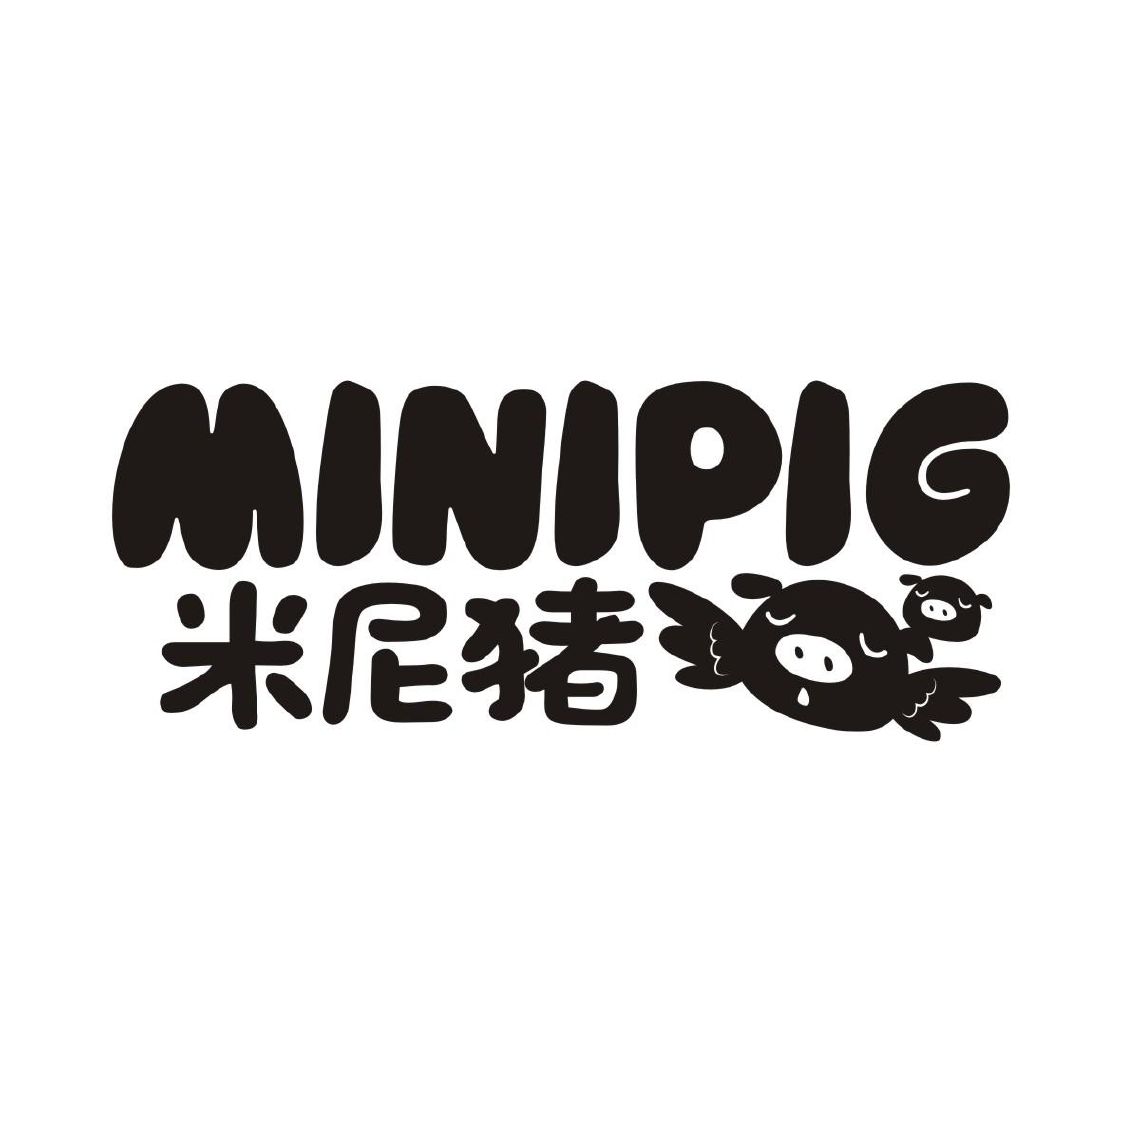 广州市拉黛菲皮具有限公司商标米尼猪 MINIPIG（18类）多少钱？